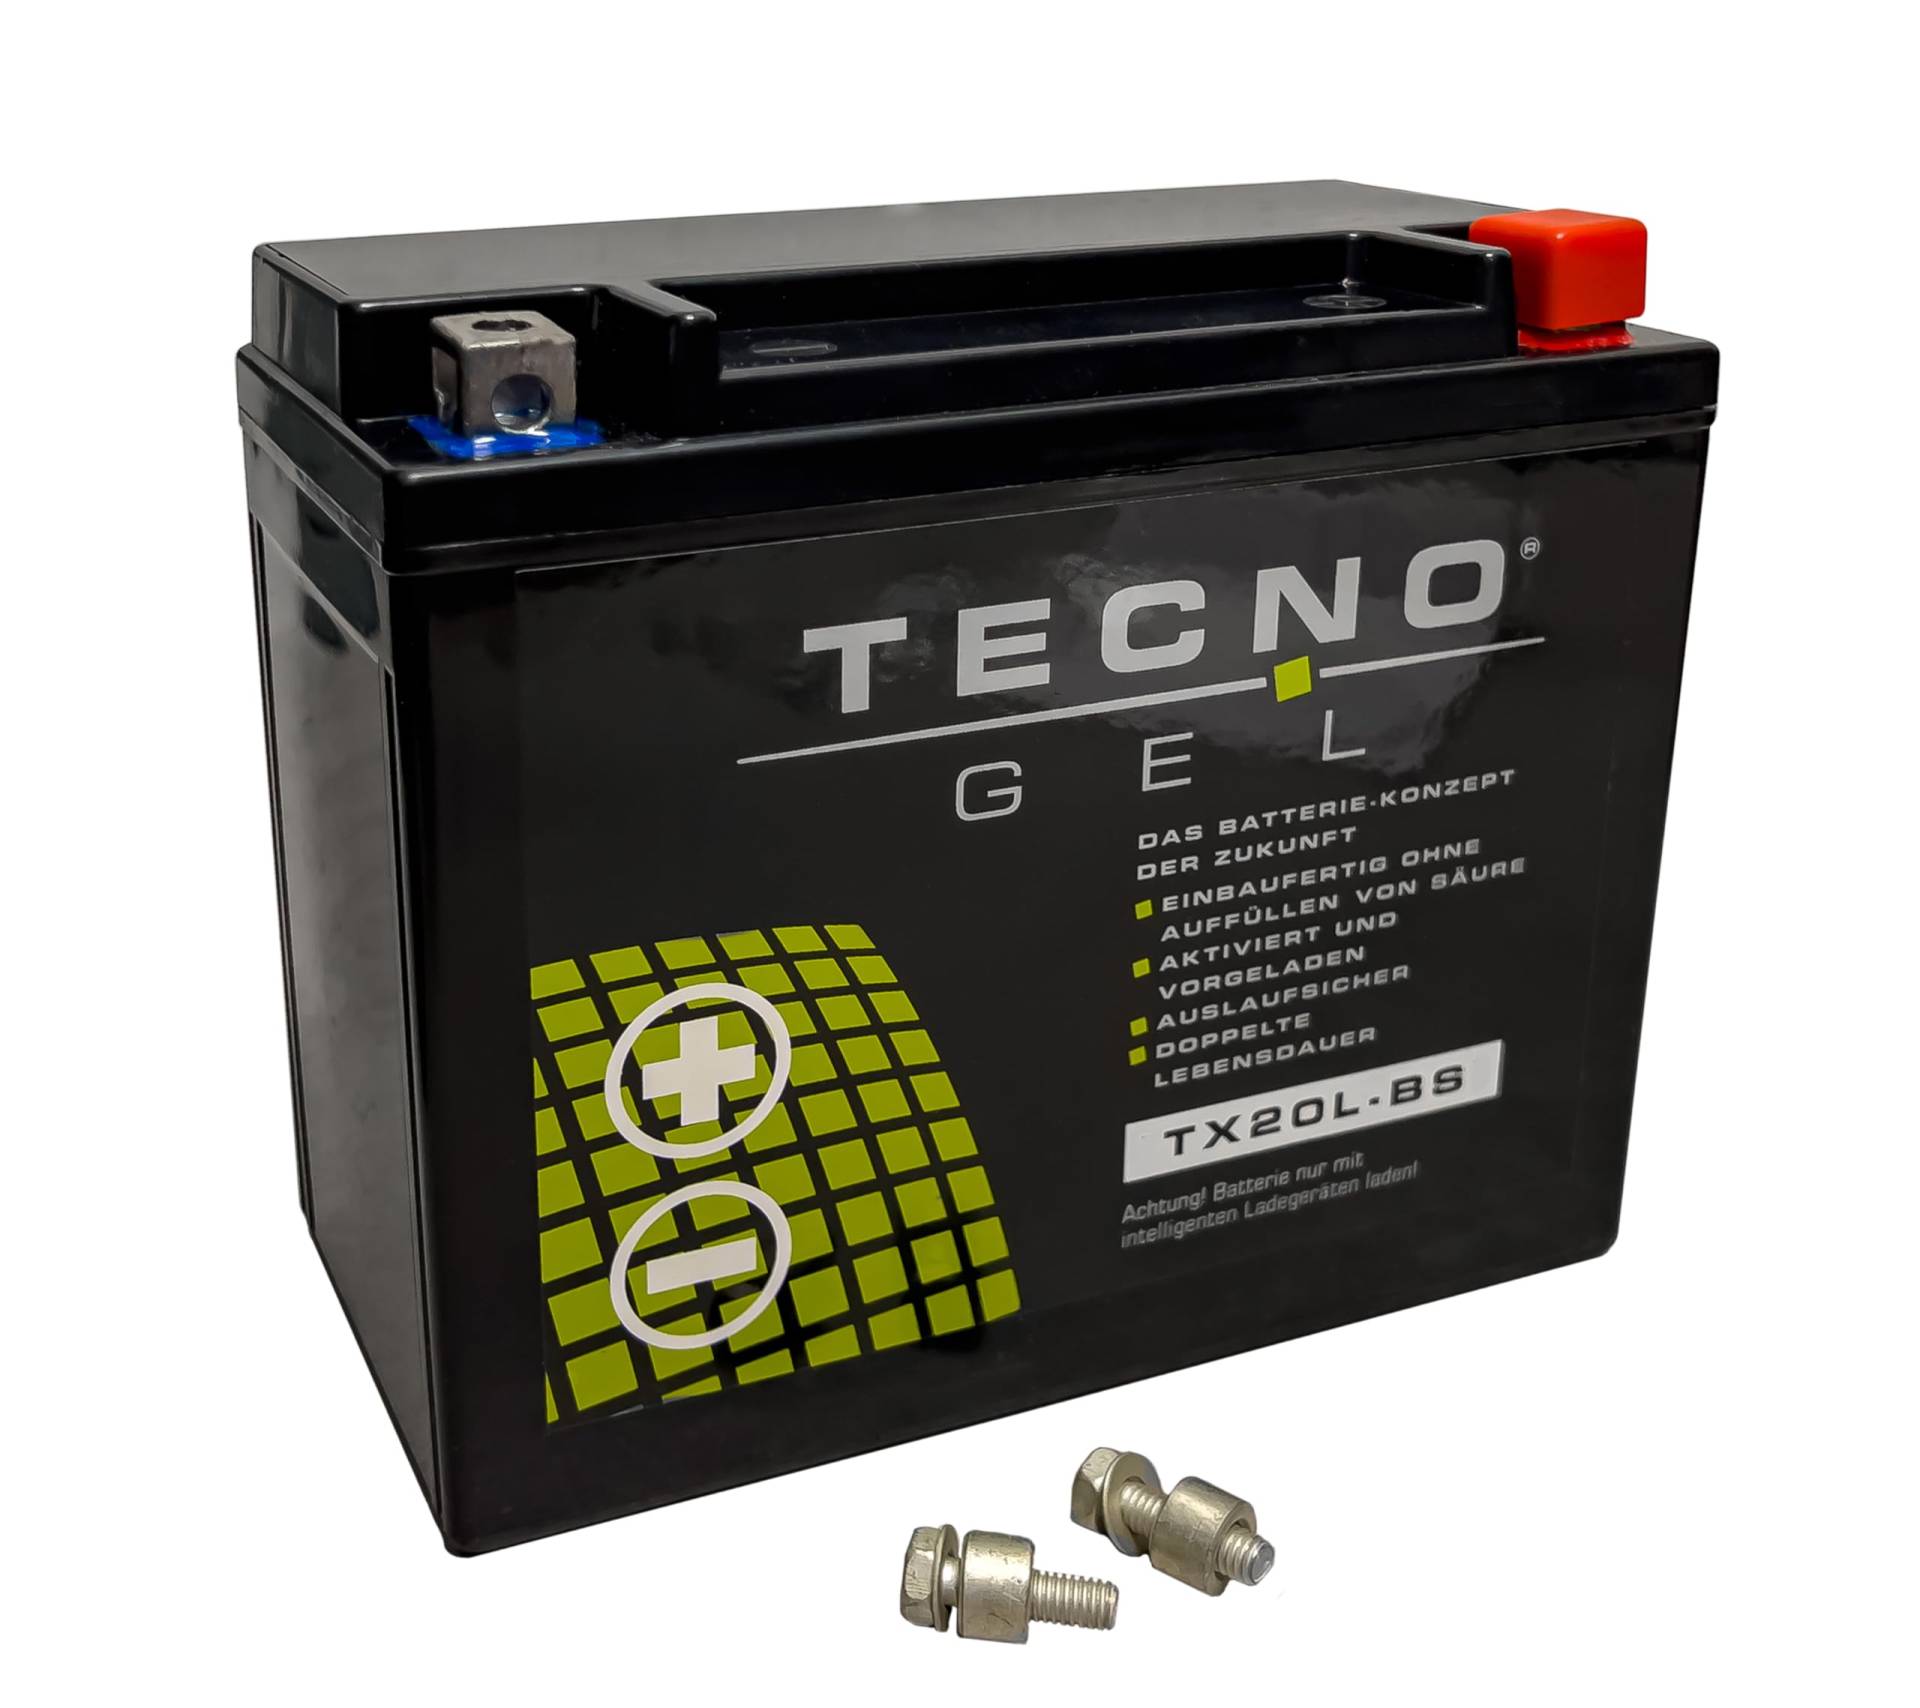 TECNO-GEL Motorrad-Batterie für YTX20L-BS für CAN-AM Renegade 500/570/800/850/1000 2010-2018, 12V Gel-Batterie 20Ah (DIN 82000), 175x87x155 mm von Wirth-Federn